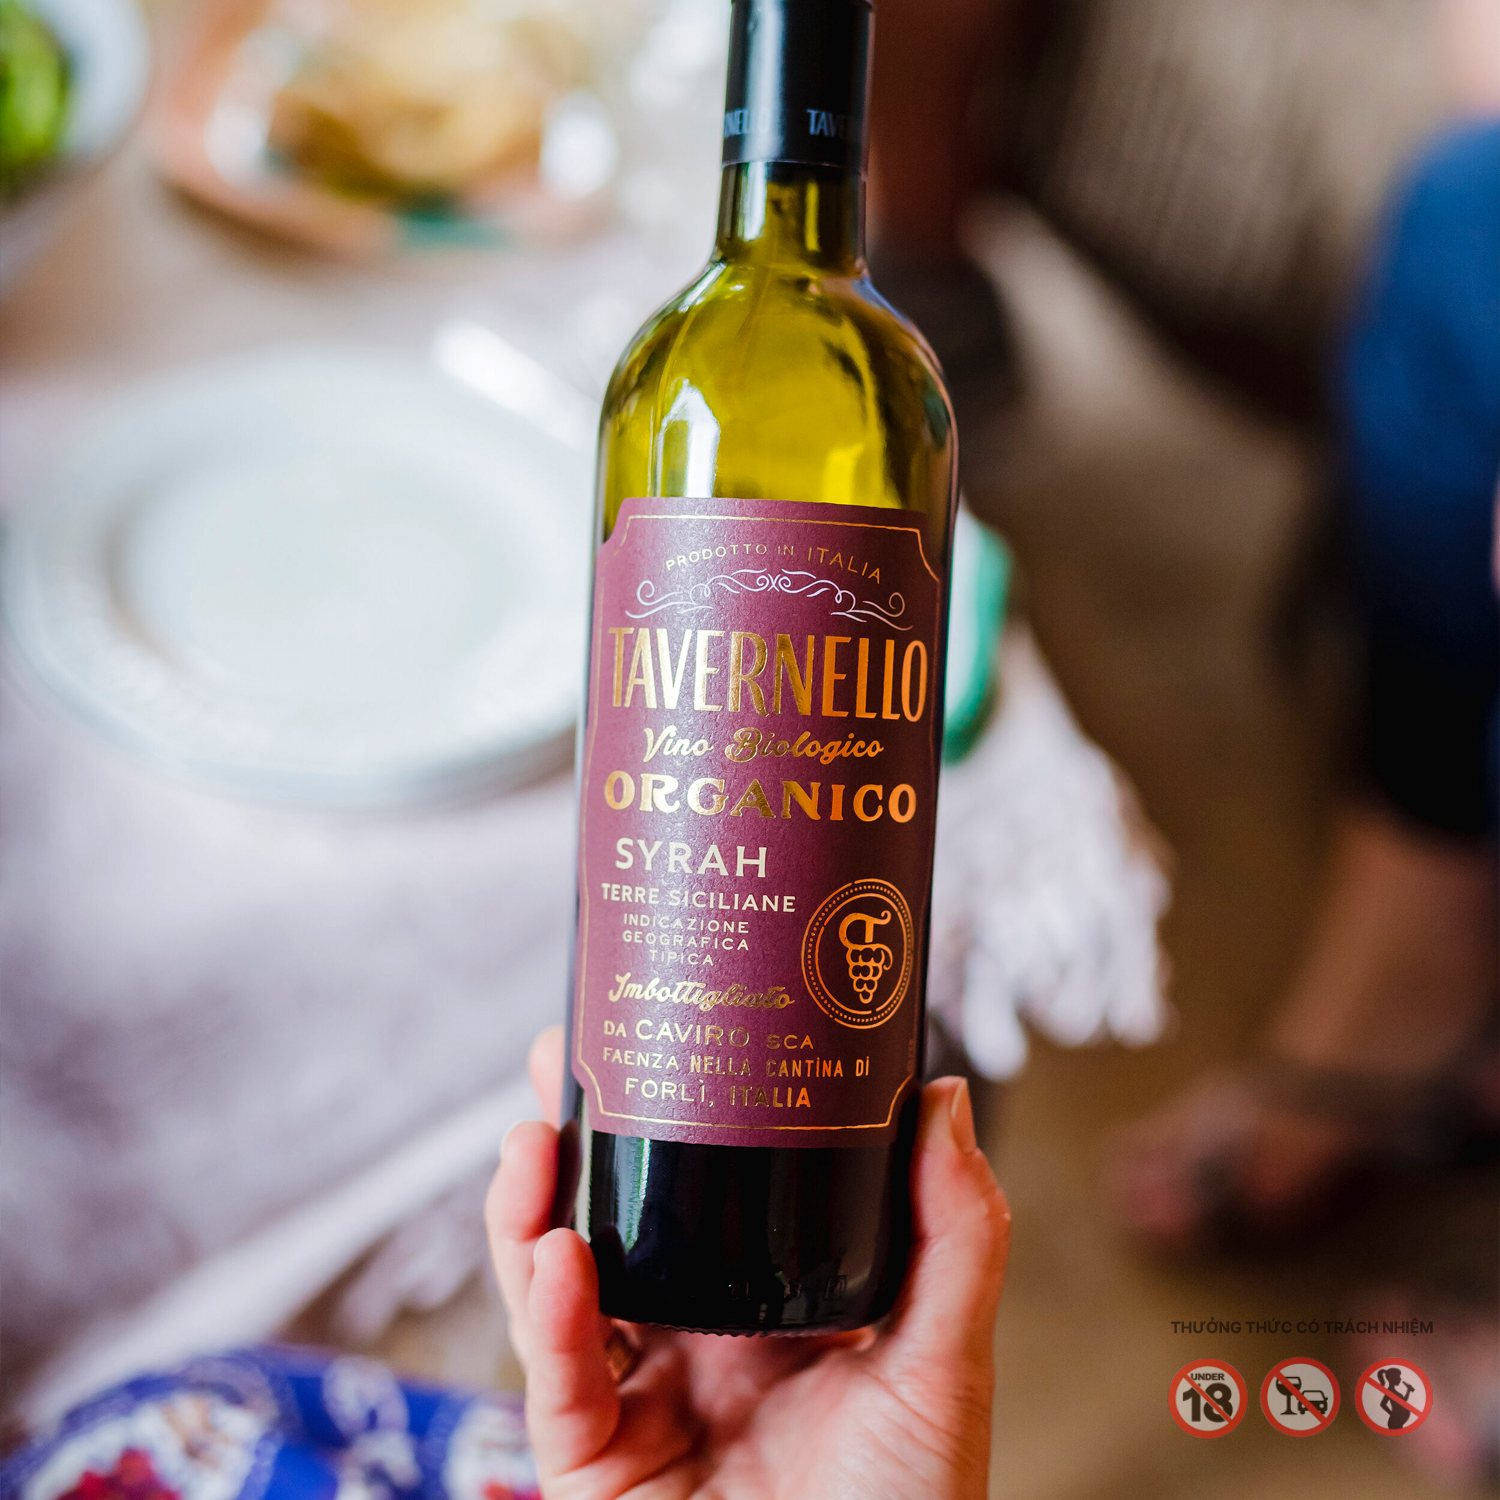 Rượu Vang Đỏ Tavernello Organico Syrah Terre Siciliane - Nhập Khẩu Chính Hãng